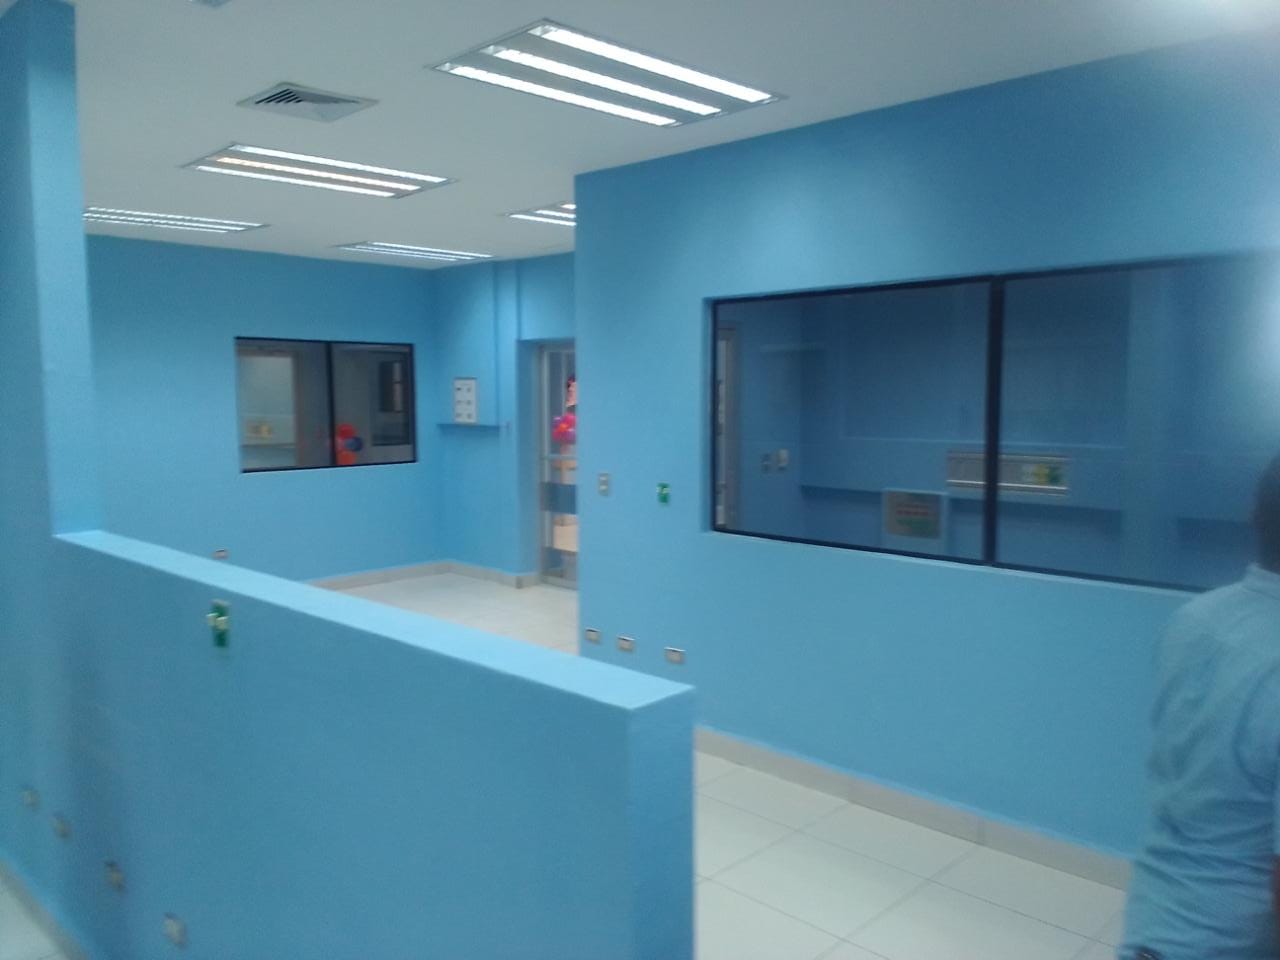 Inauguran sala de neonatología del hospital Alemán Nicaragüense Managua. Danielka Ruíz/Radio La Primerísima